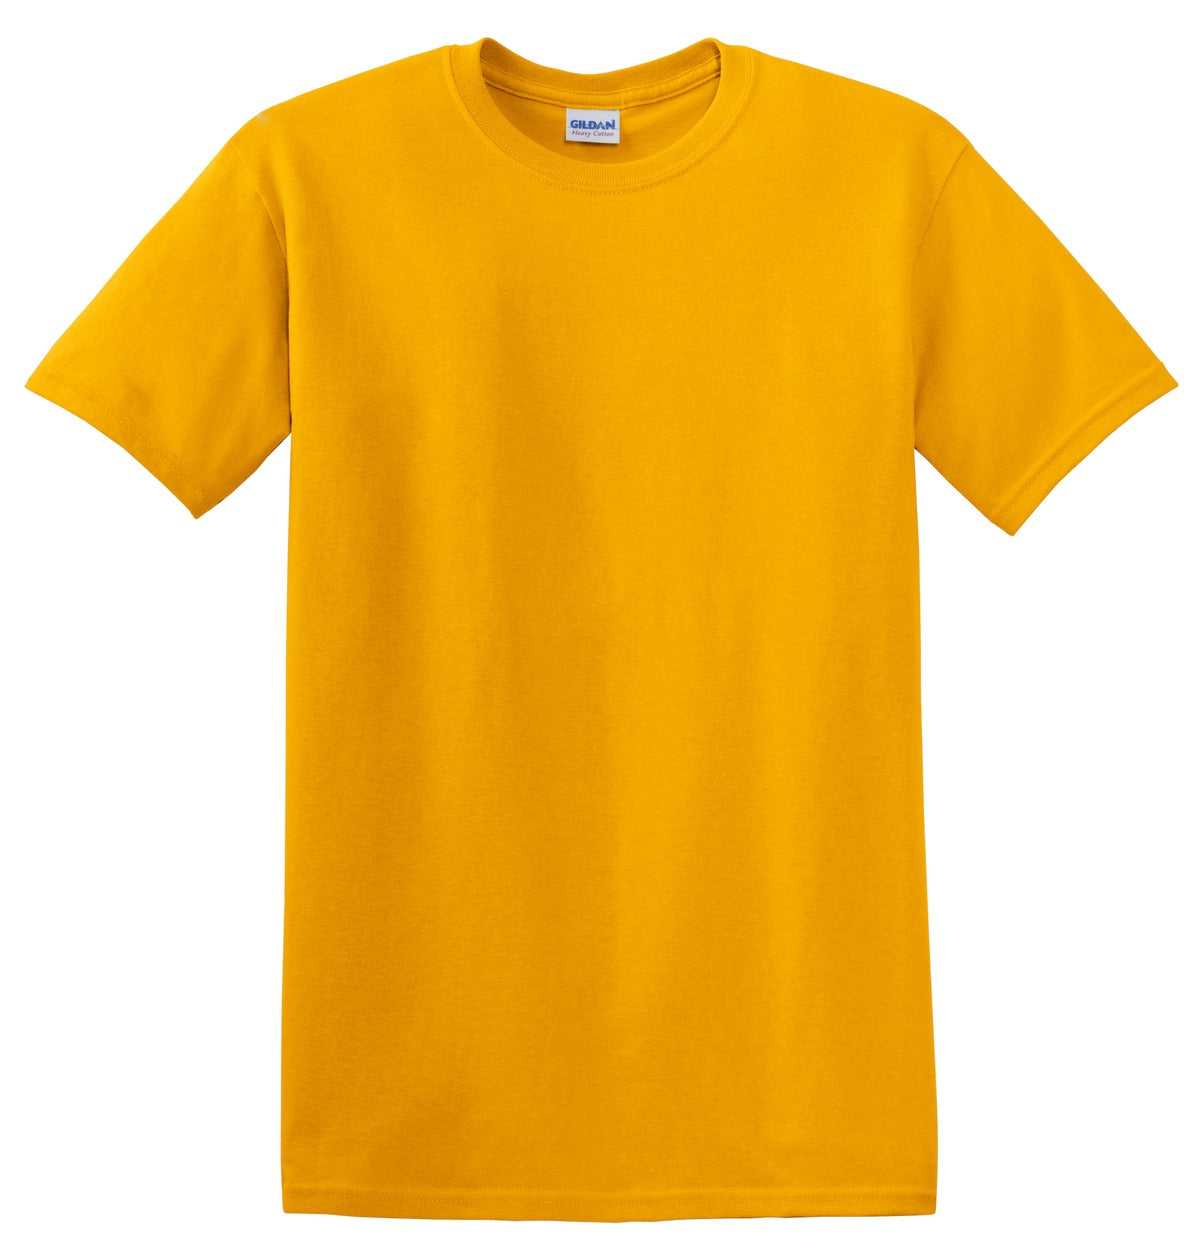 Gildan 5000 Heavy Cotton 100% Cotton T-Shirt - Gold - HIT a Double